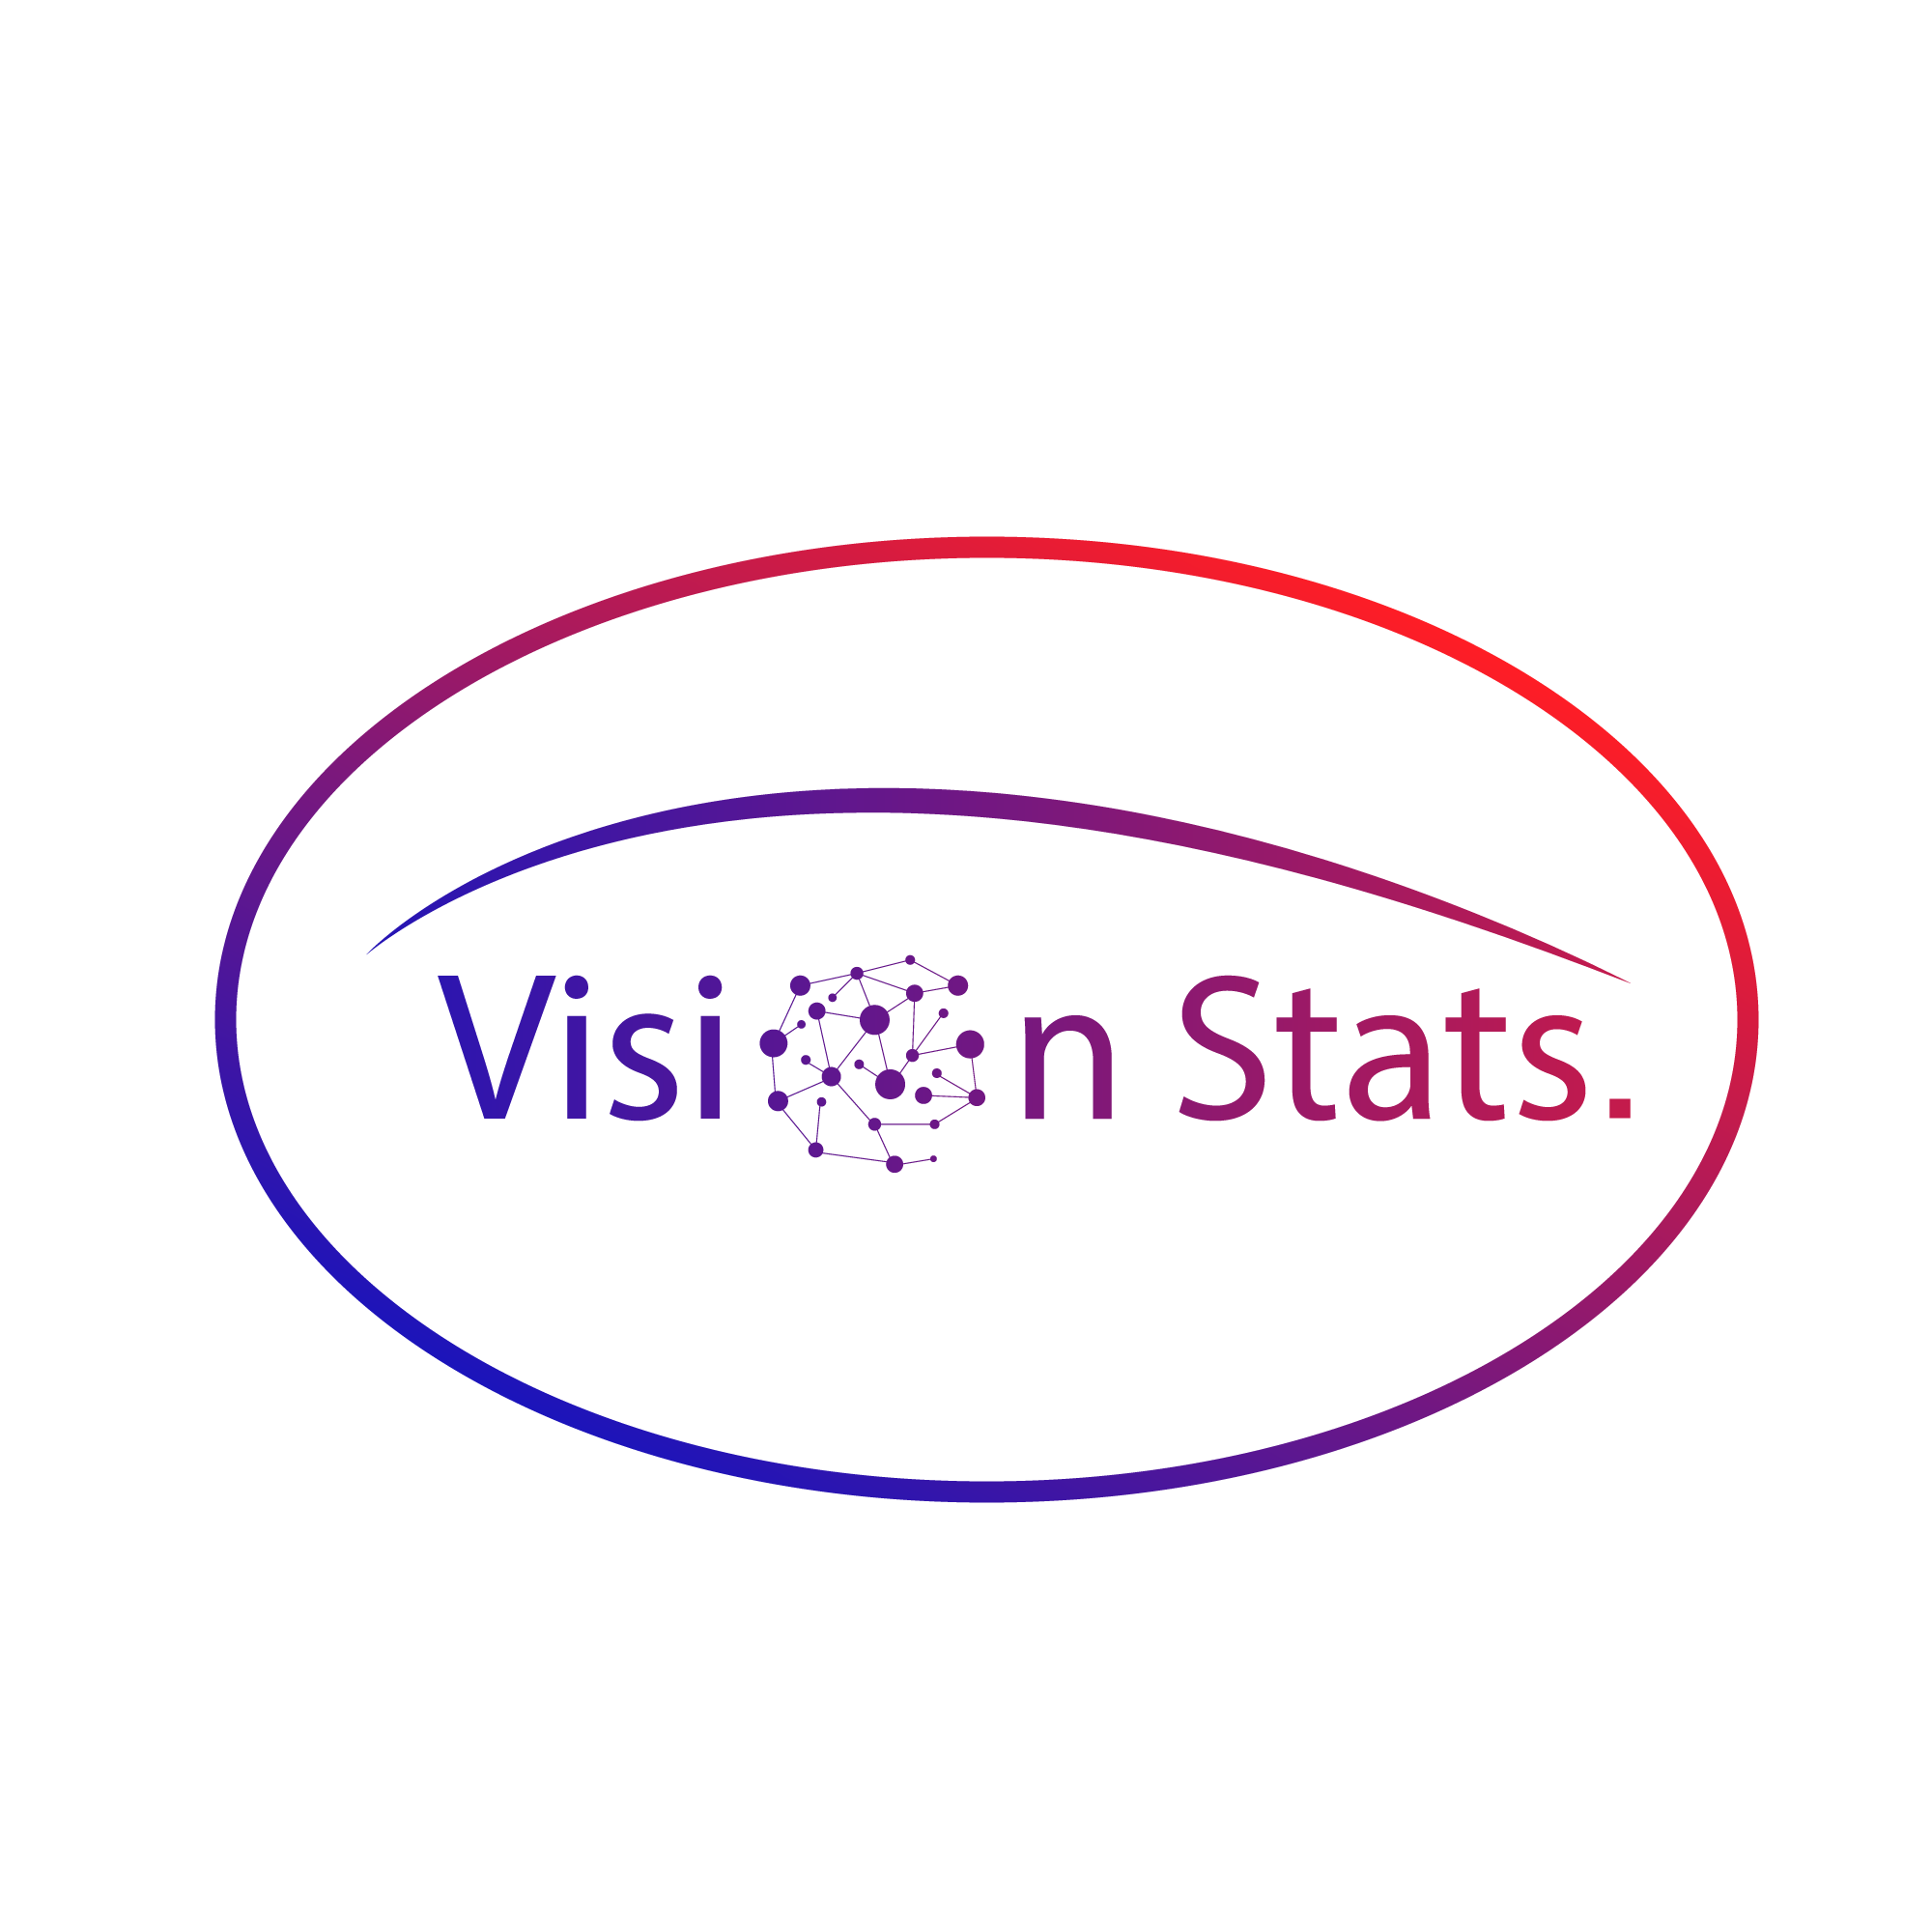 Vision Stats